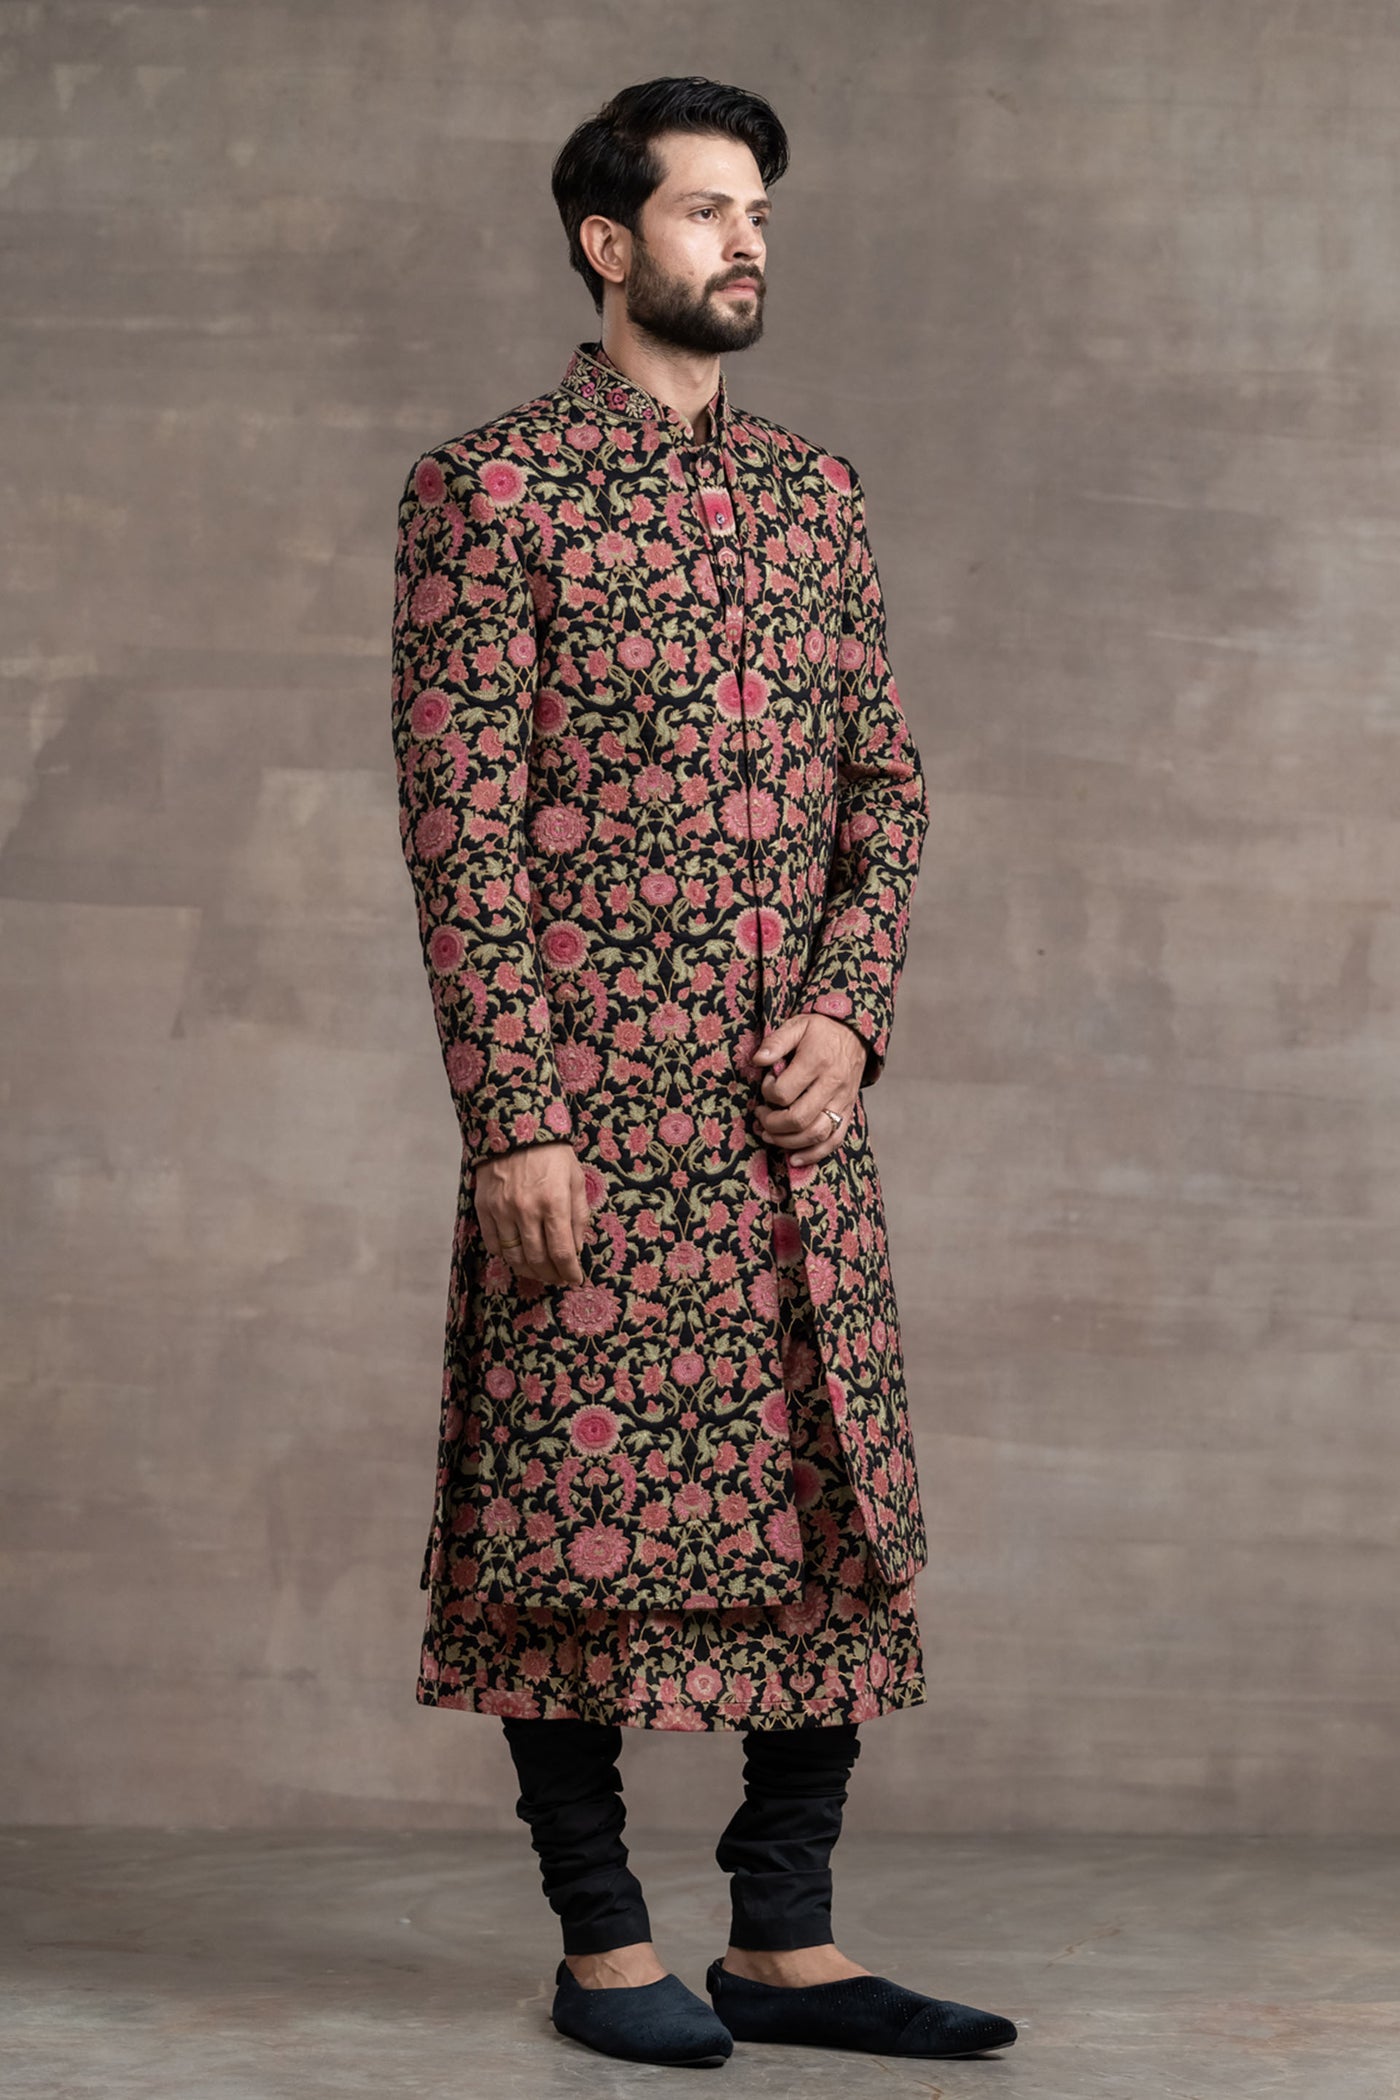 Tarun Tahitliani Floral Printed Quilted Sherwani black indian designer wear menswear online shopping melange singapore